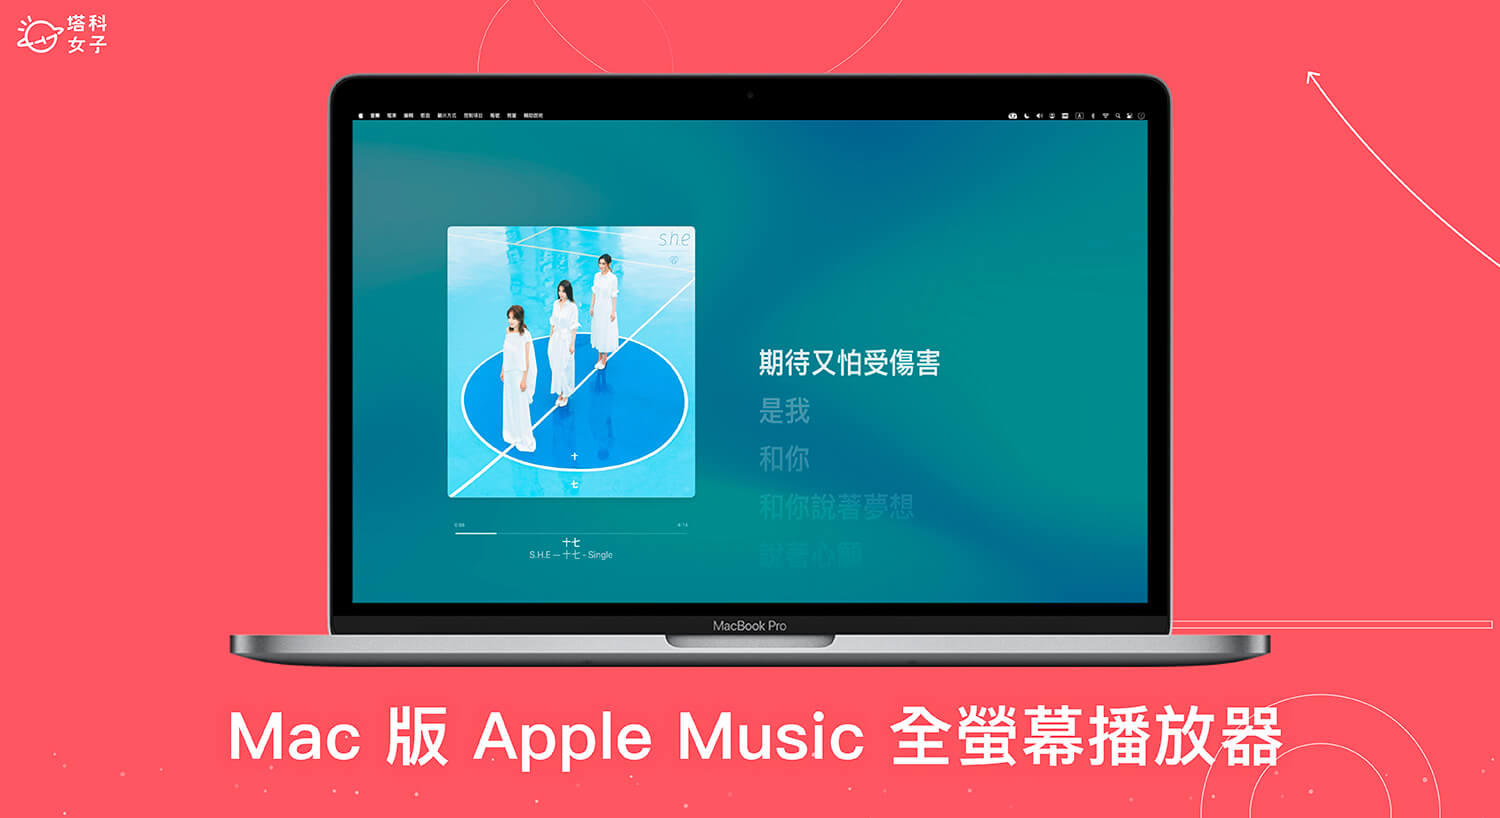 Mac Apple Music 全螢幕播放器可顯示好看的專輯封面與動態歌詞